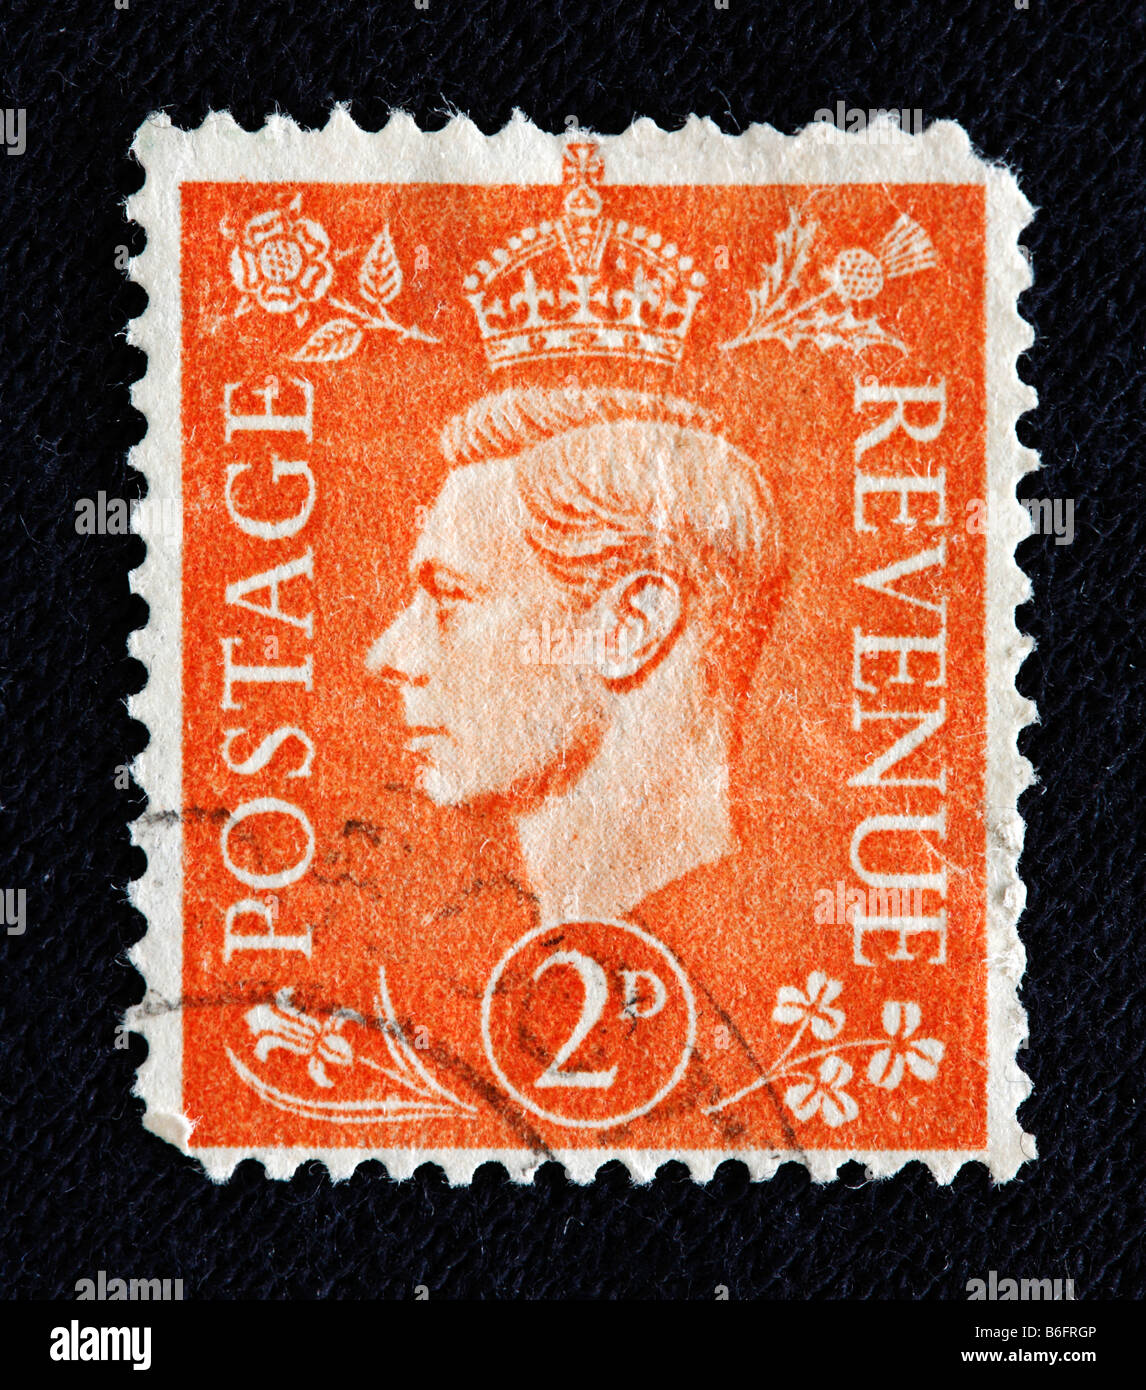 König George VI des Vereinigten Königreichs (1936 – 1952), Briefmarke, UK Stockfoto